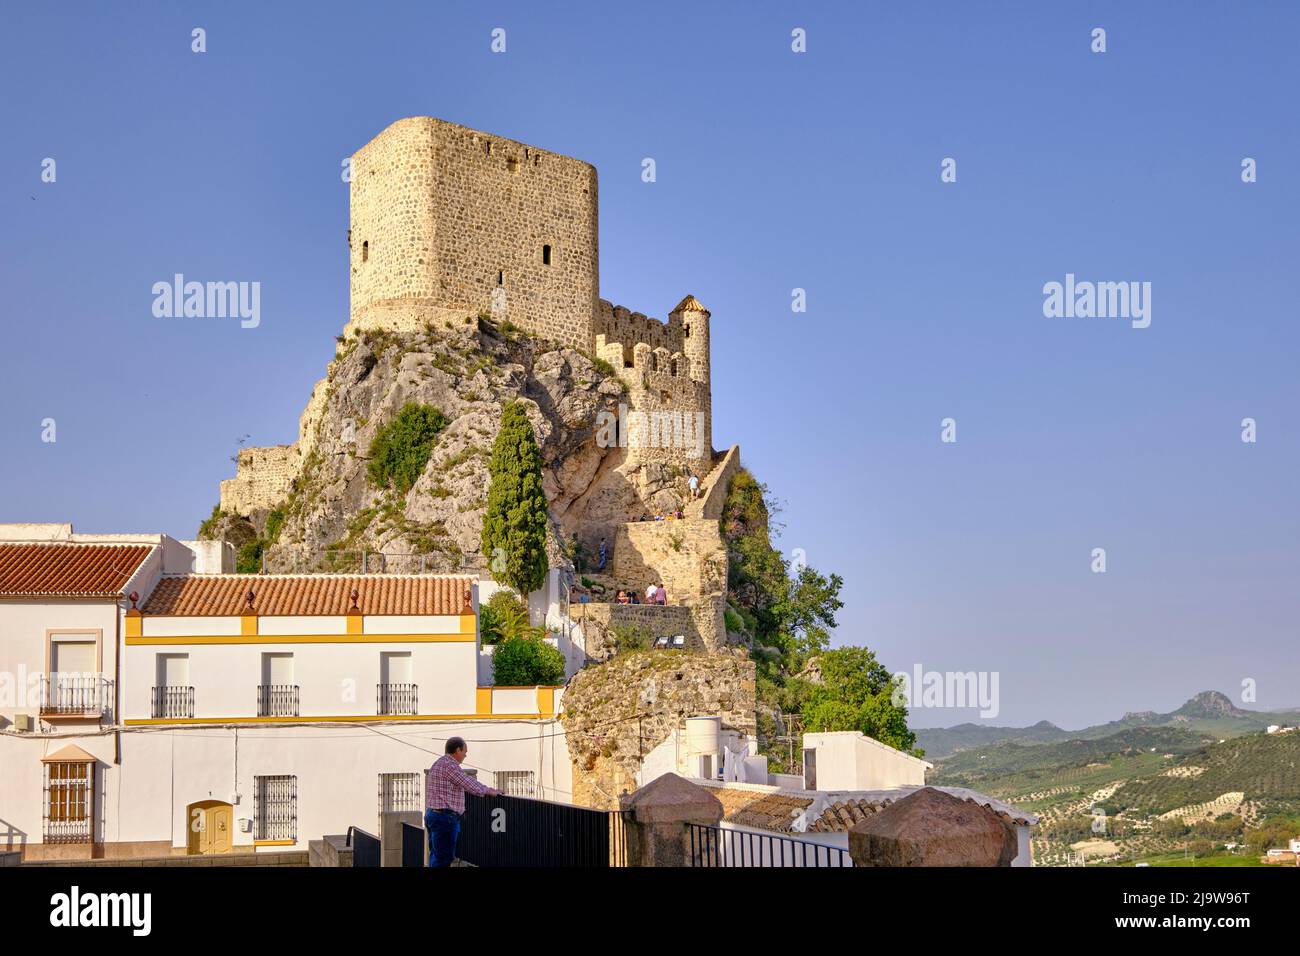 Le château médiéval de 12th ans d'Olvera, Andalousie. Espagne Banque D'Images